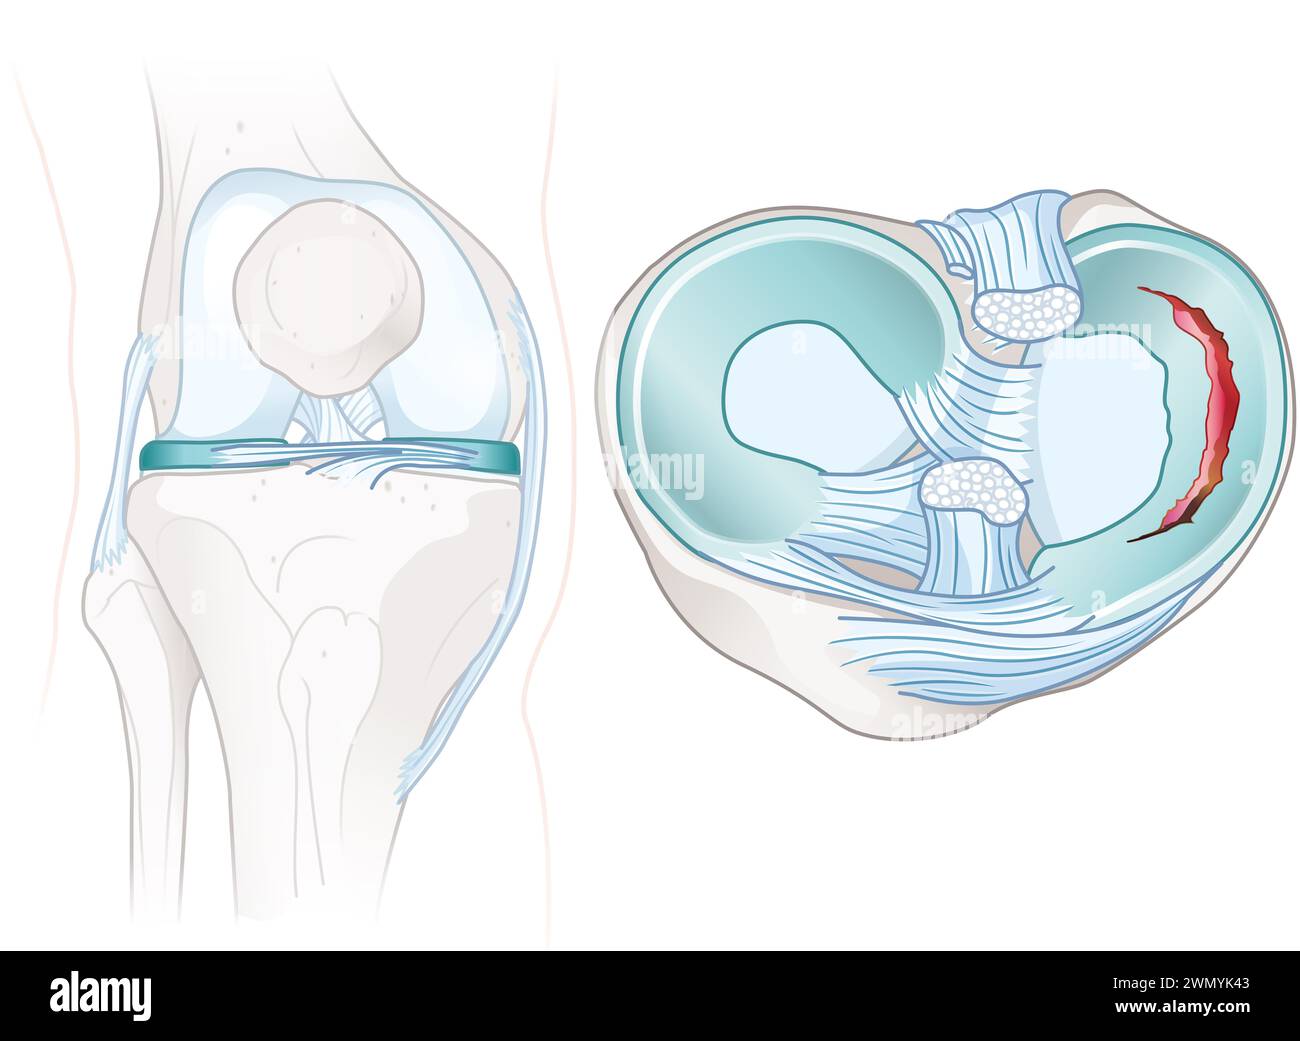 Menisken sind C-förmiger Knorpel in den Knien, der die Gelenke abfedert und stabilisiert. Kreuzbänder stabilisieren das Knie und verbinden Oberschenkel und Schienbein. Stockfoto